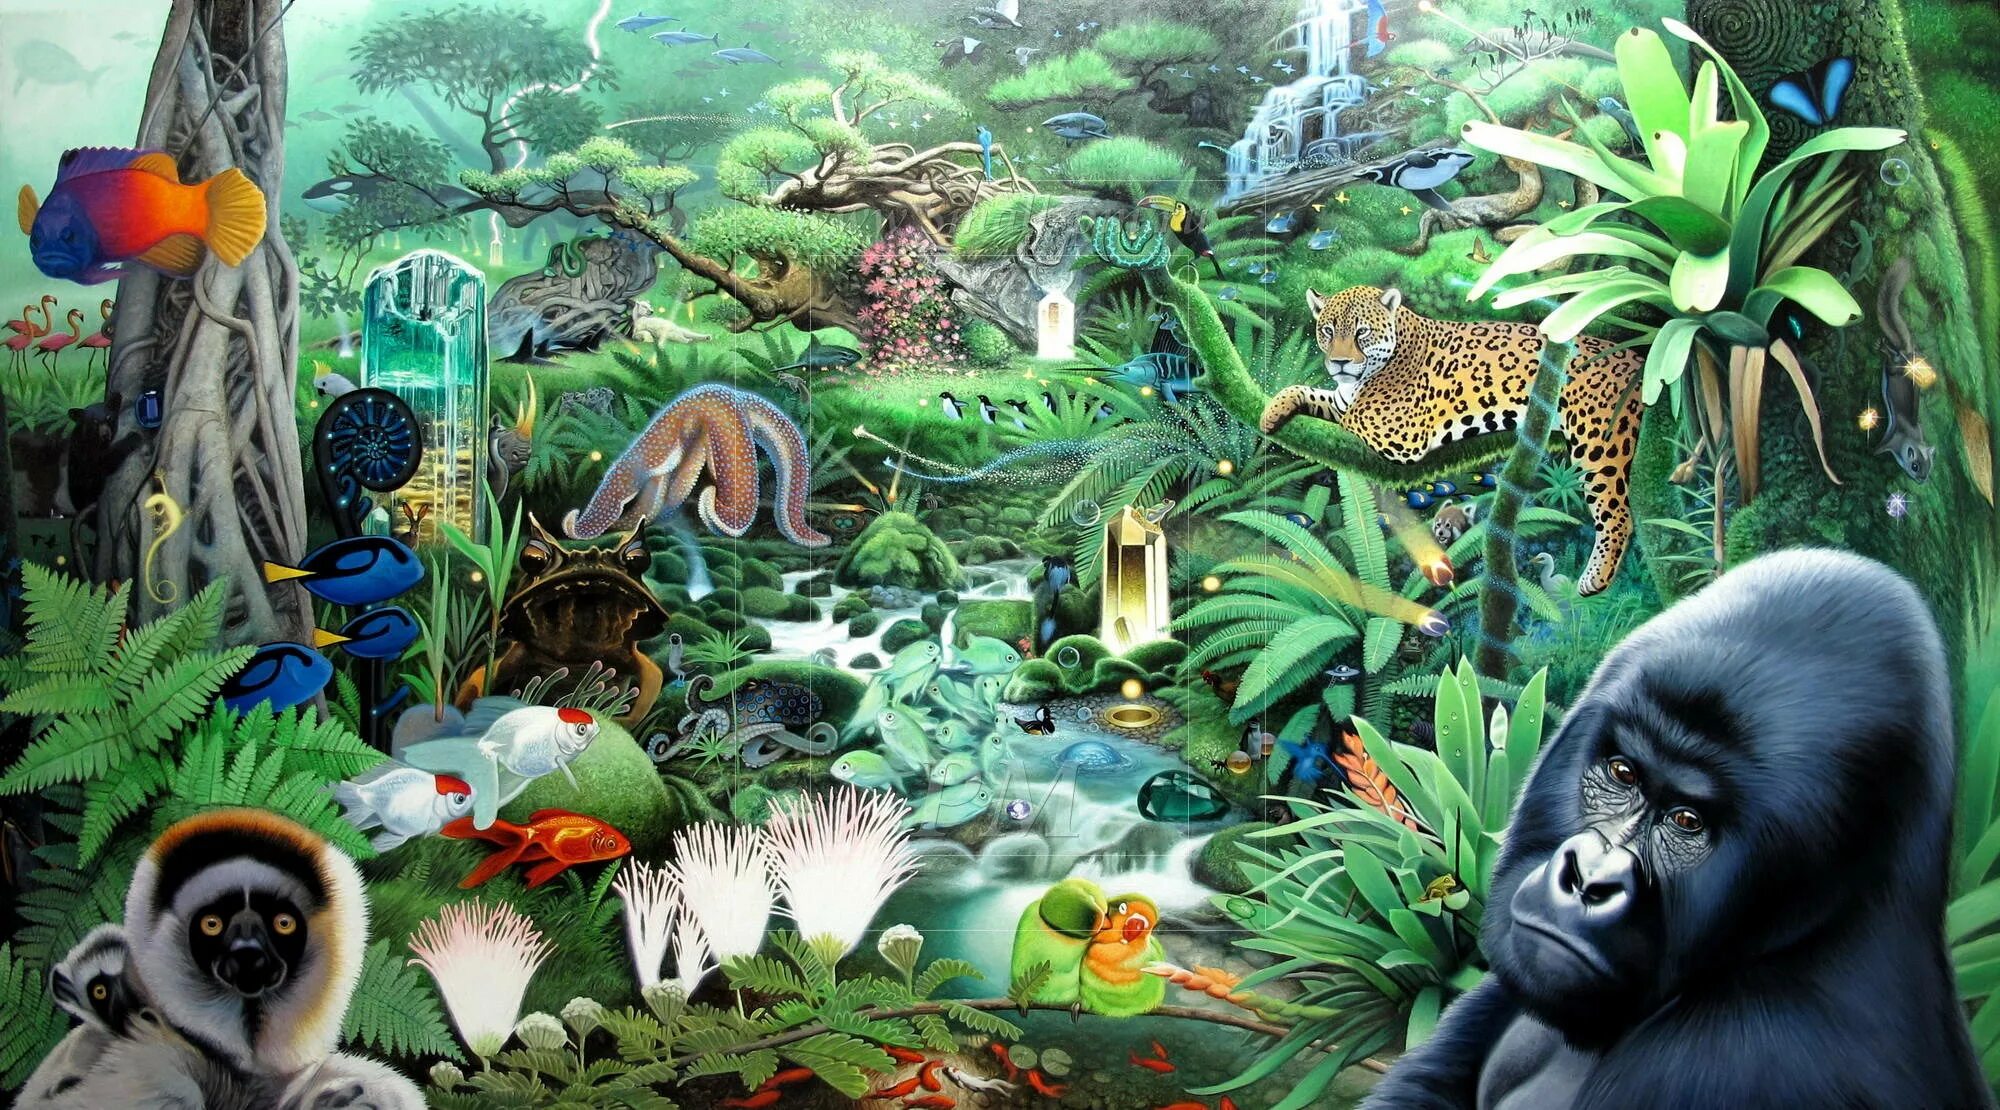 Animal themes. Джунгли Джангл. Обитатели джунглей. Тропический лес животные. Обитатели джунглей для детей.